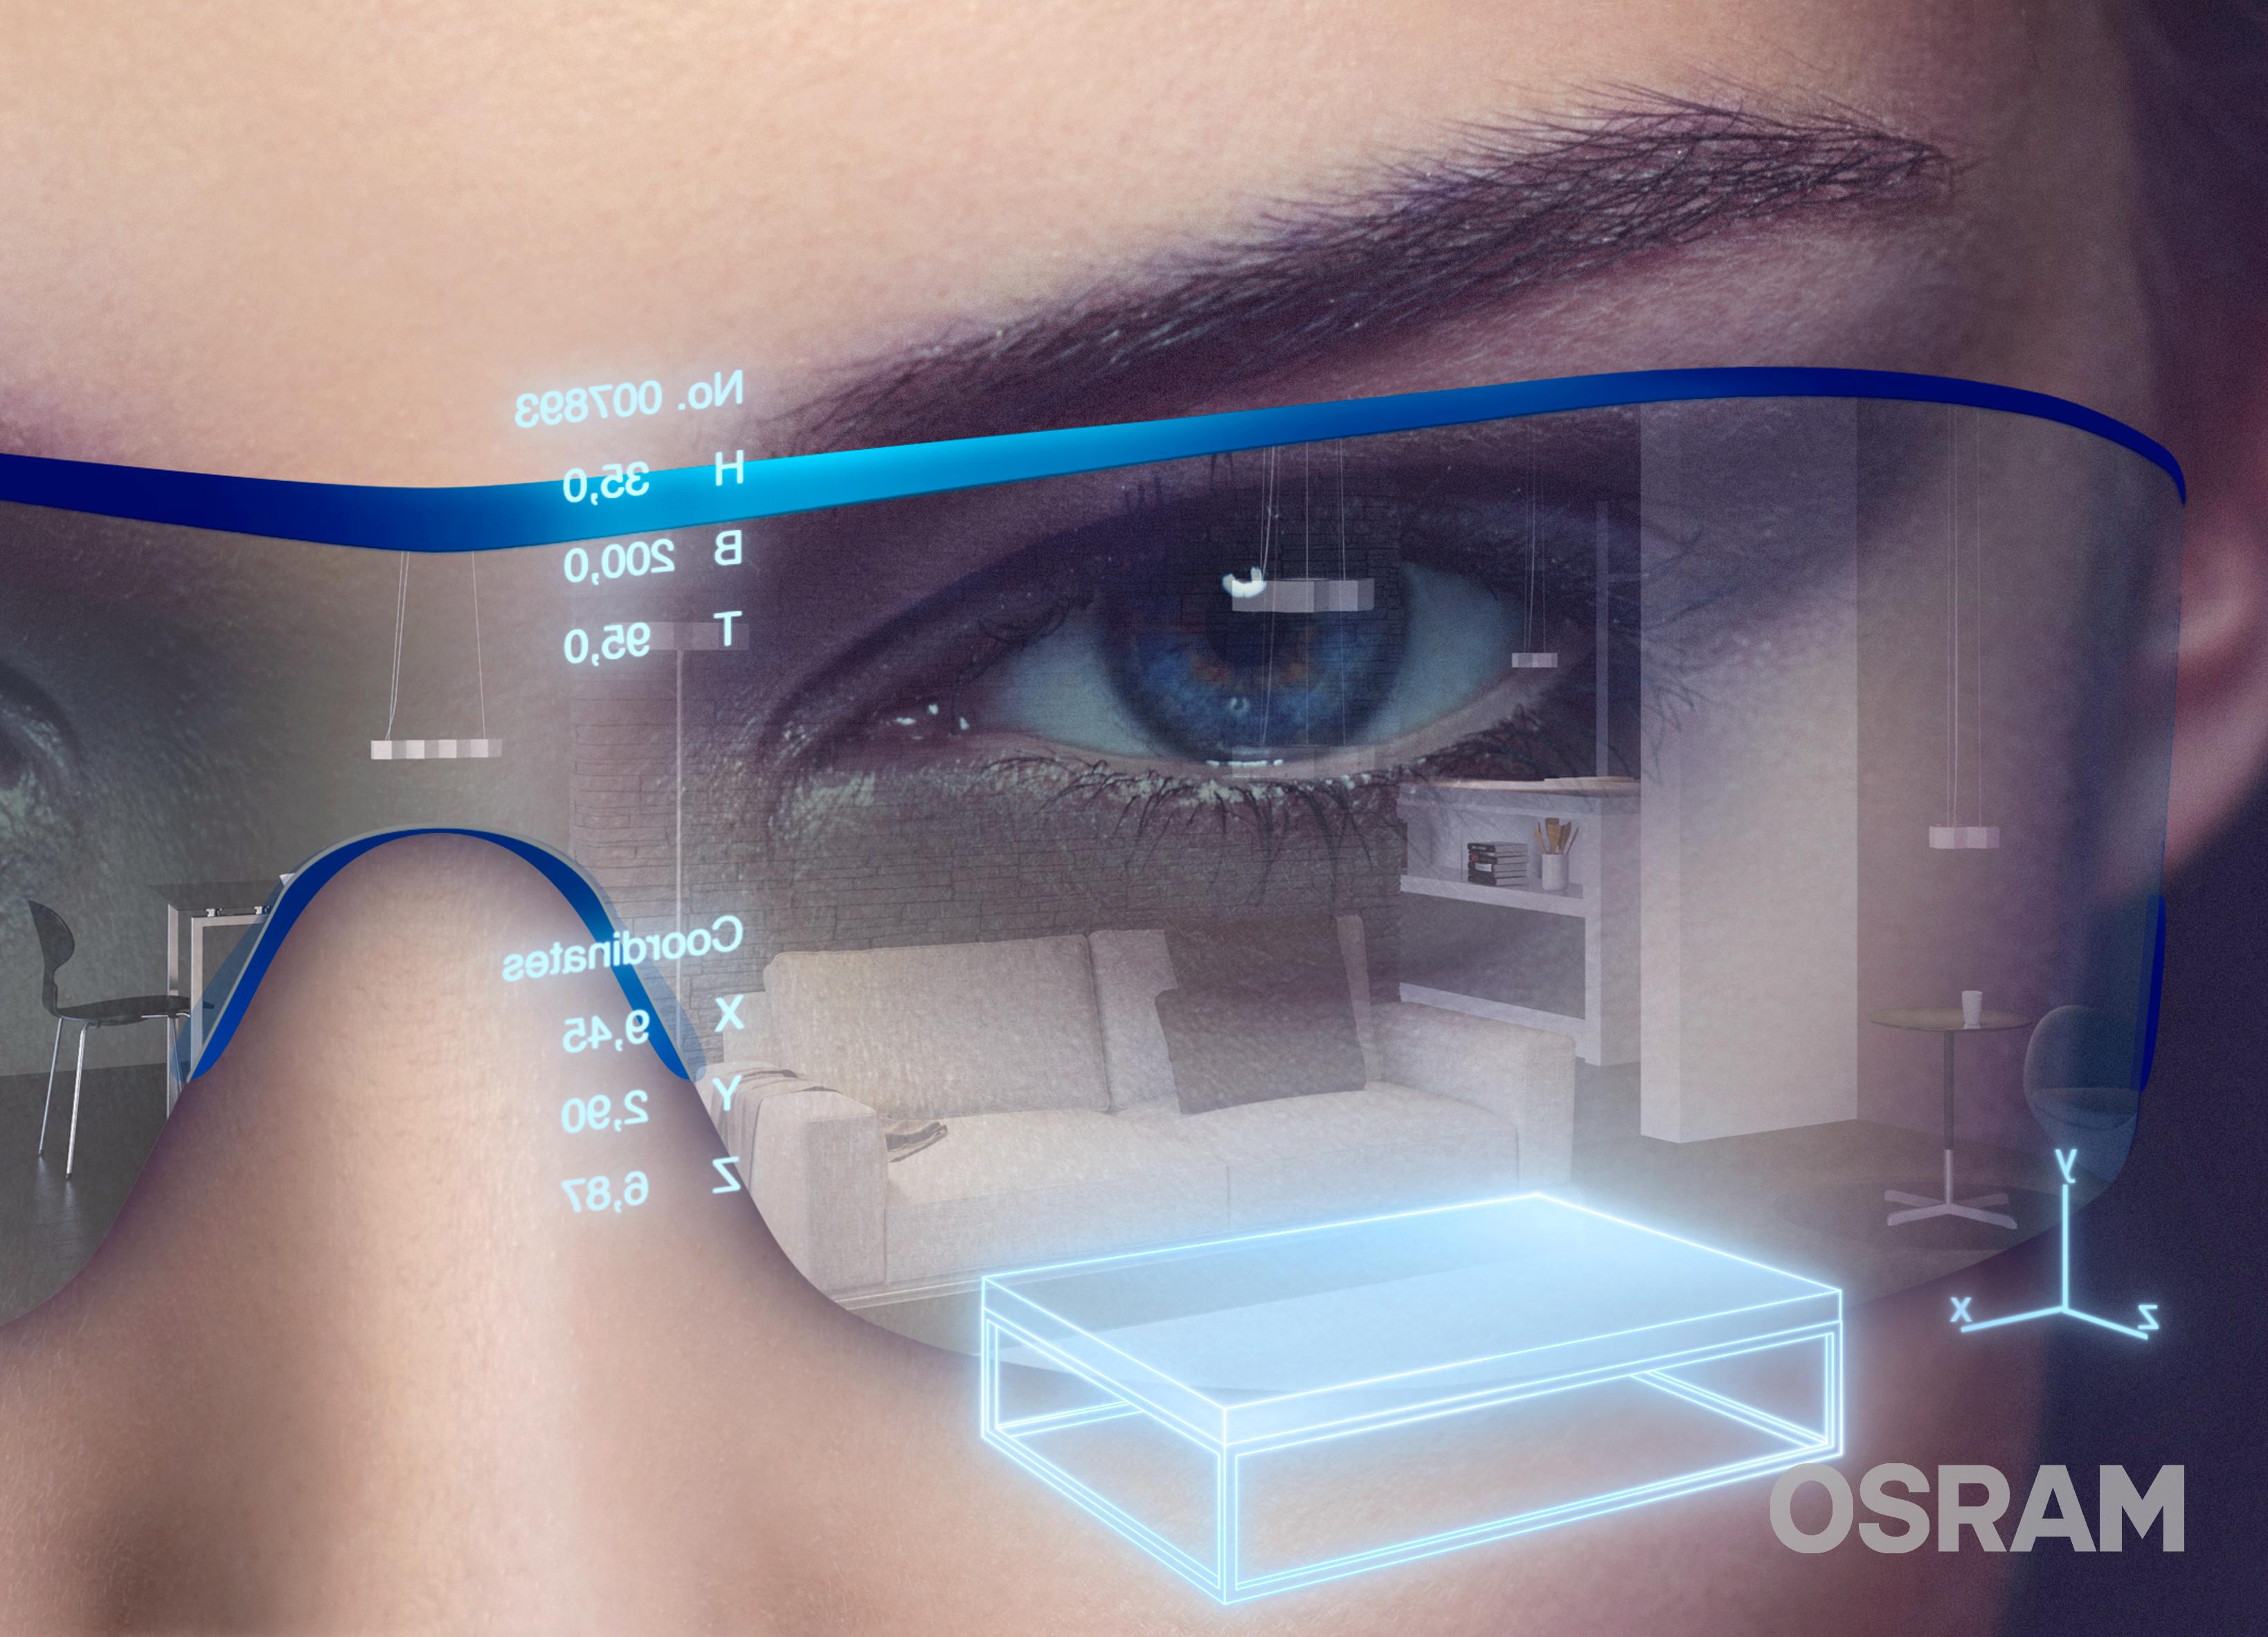 眼球追踪技术加速科技进步驱使arvr飞速发展